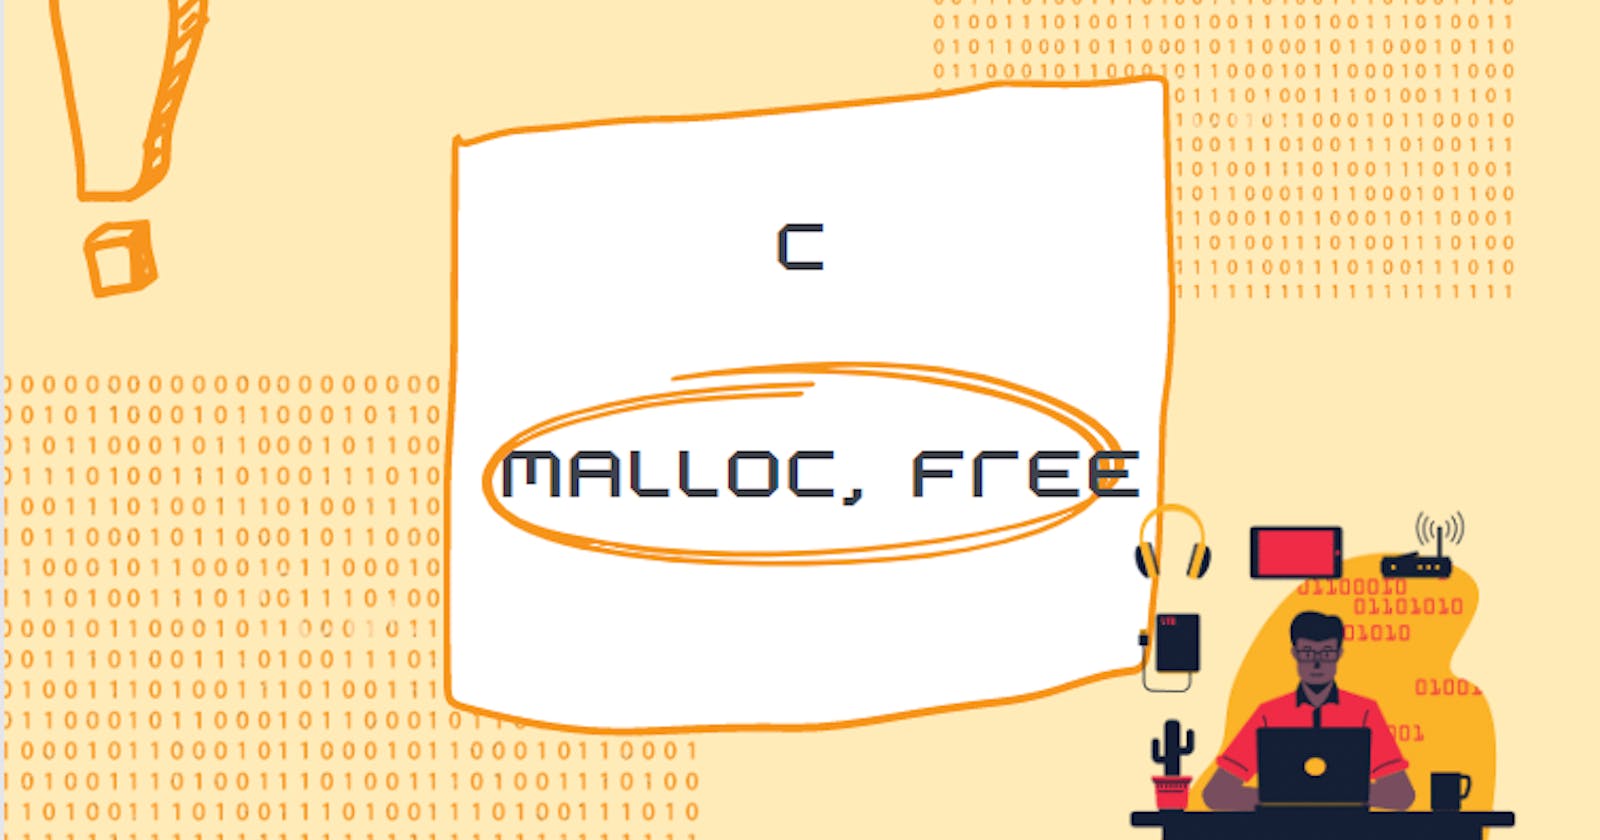 language C - malloc, free, calloc